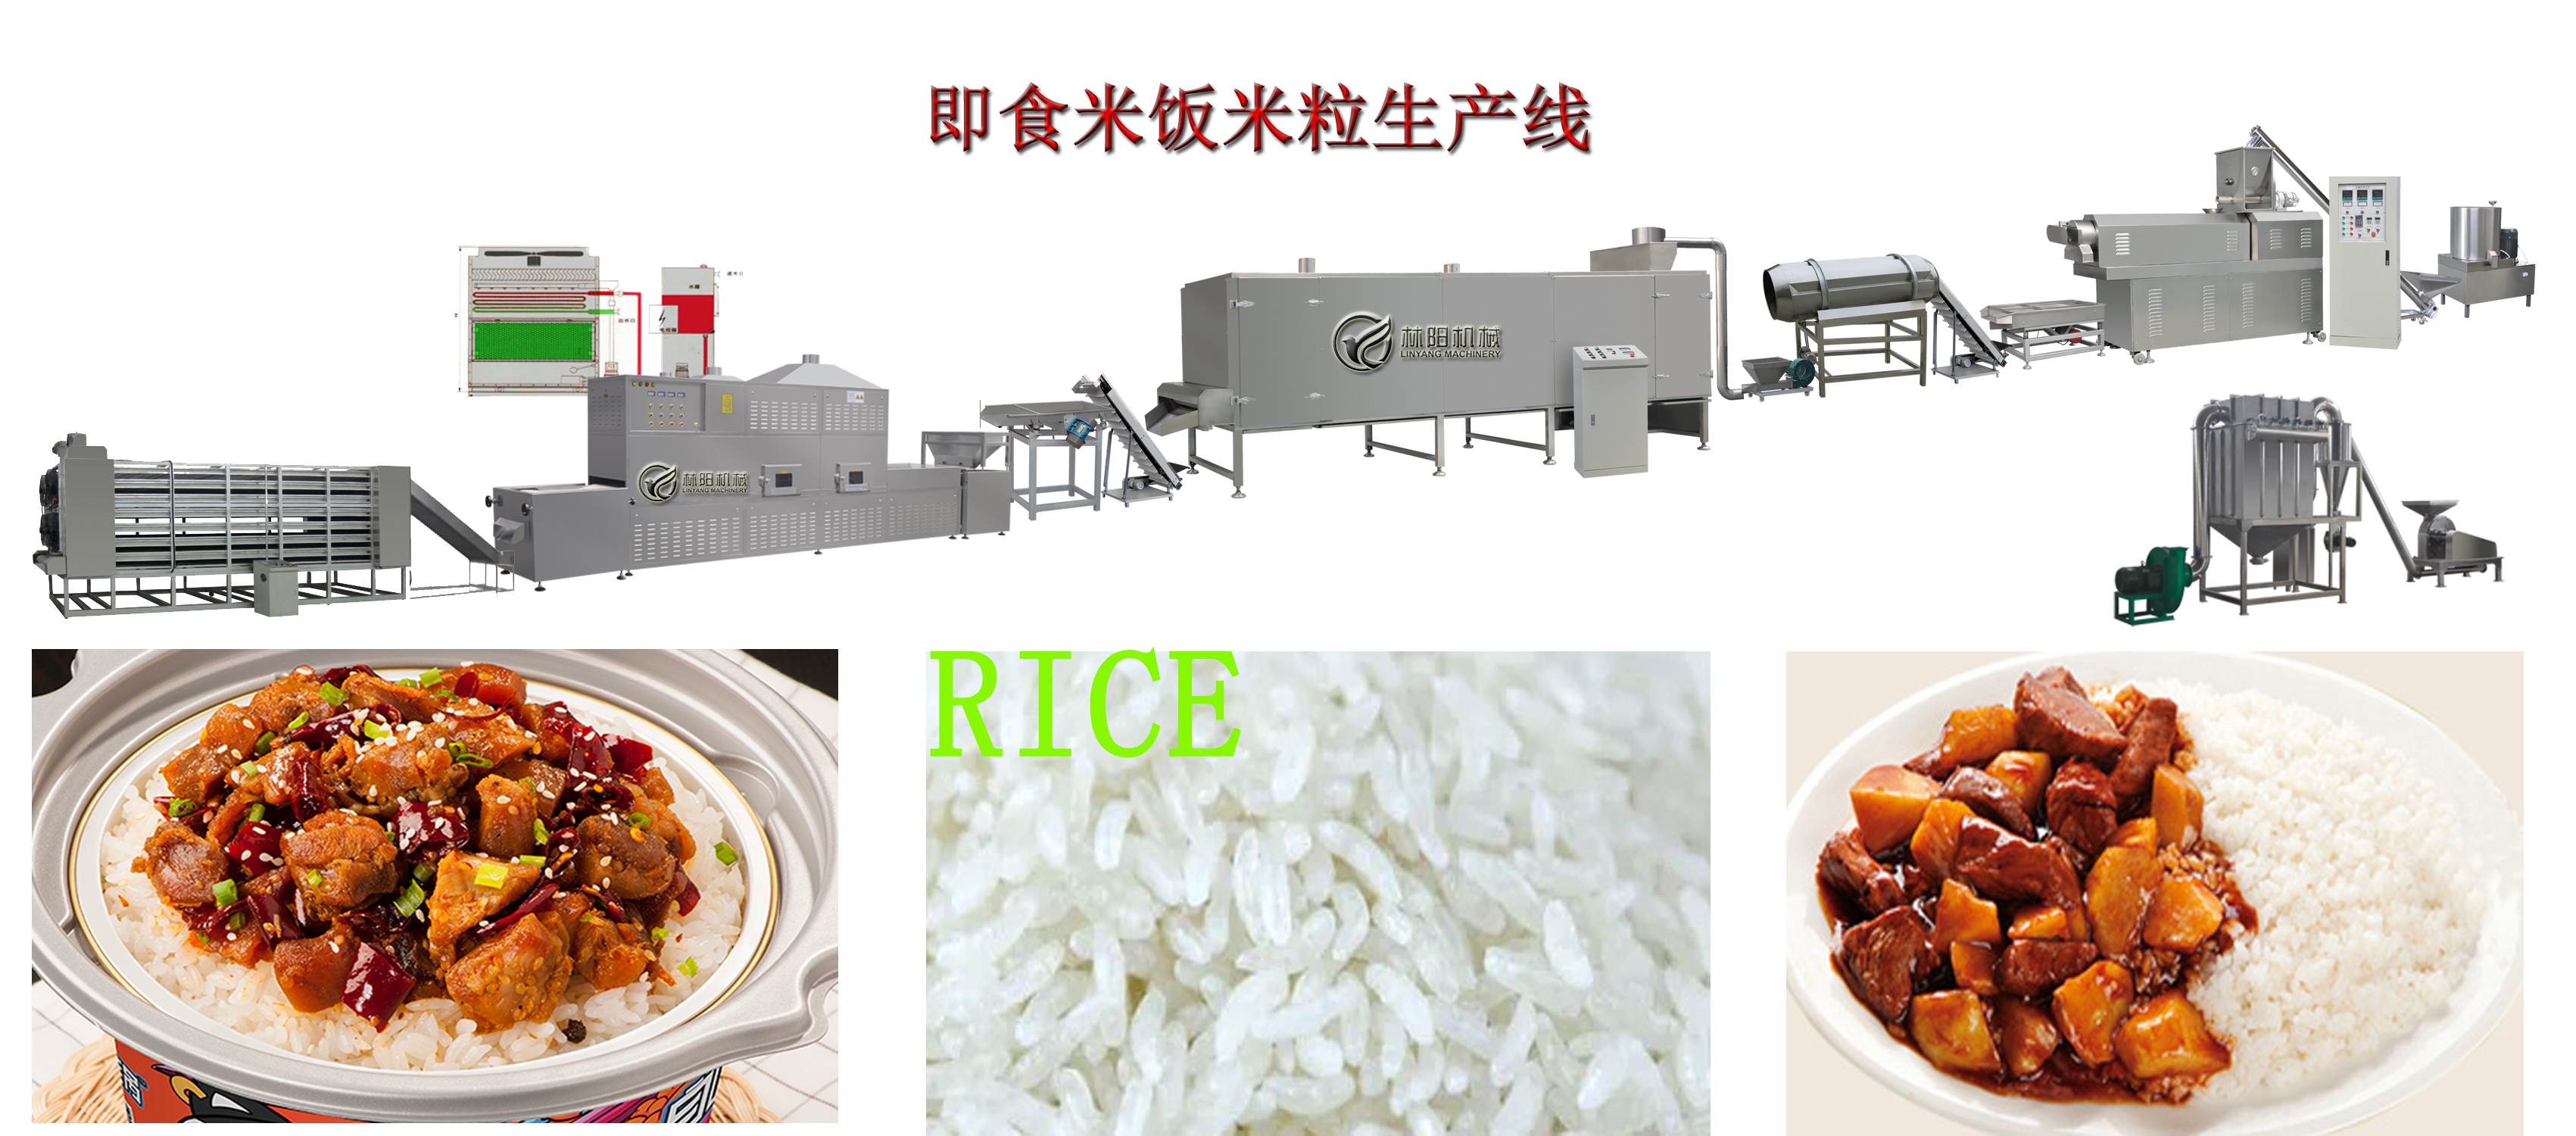 自热米饭生产线(图1)